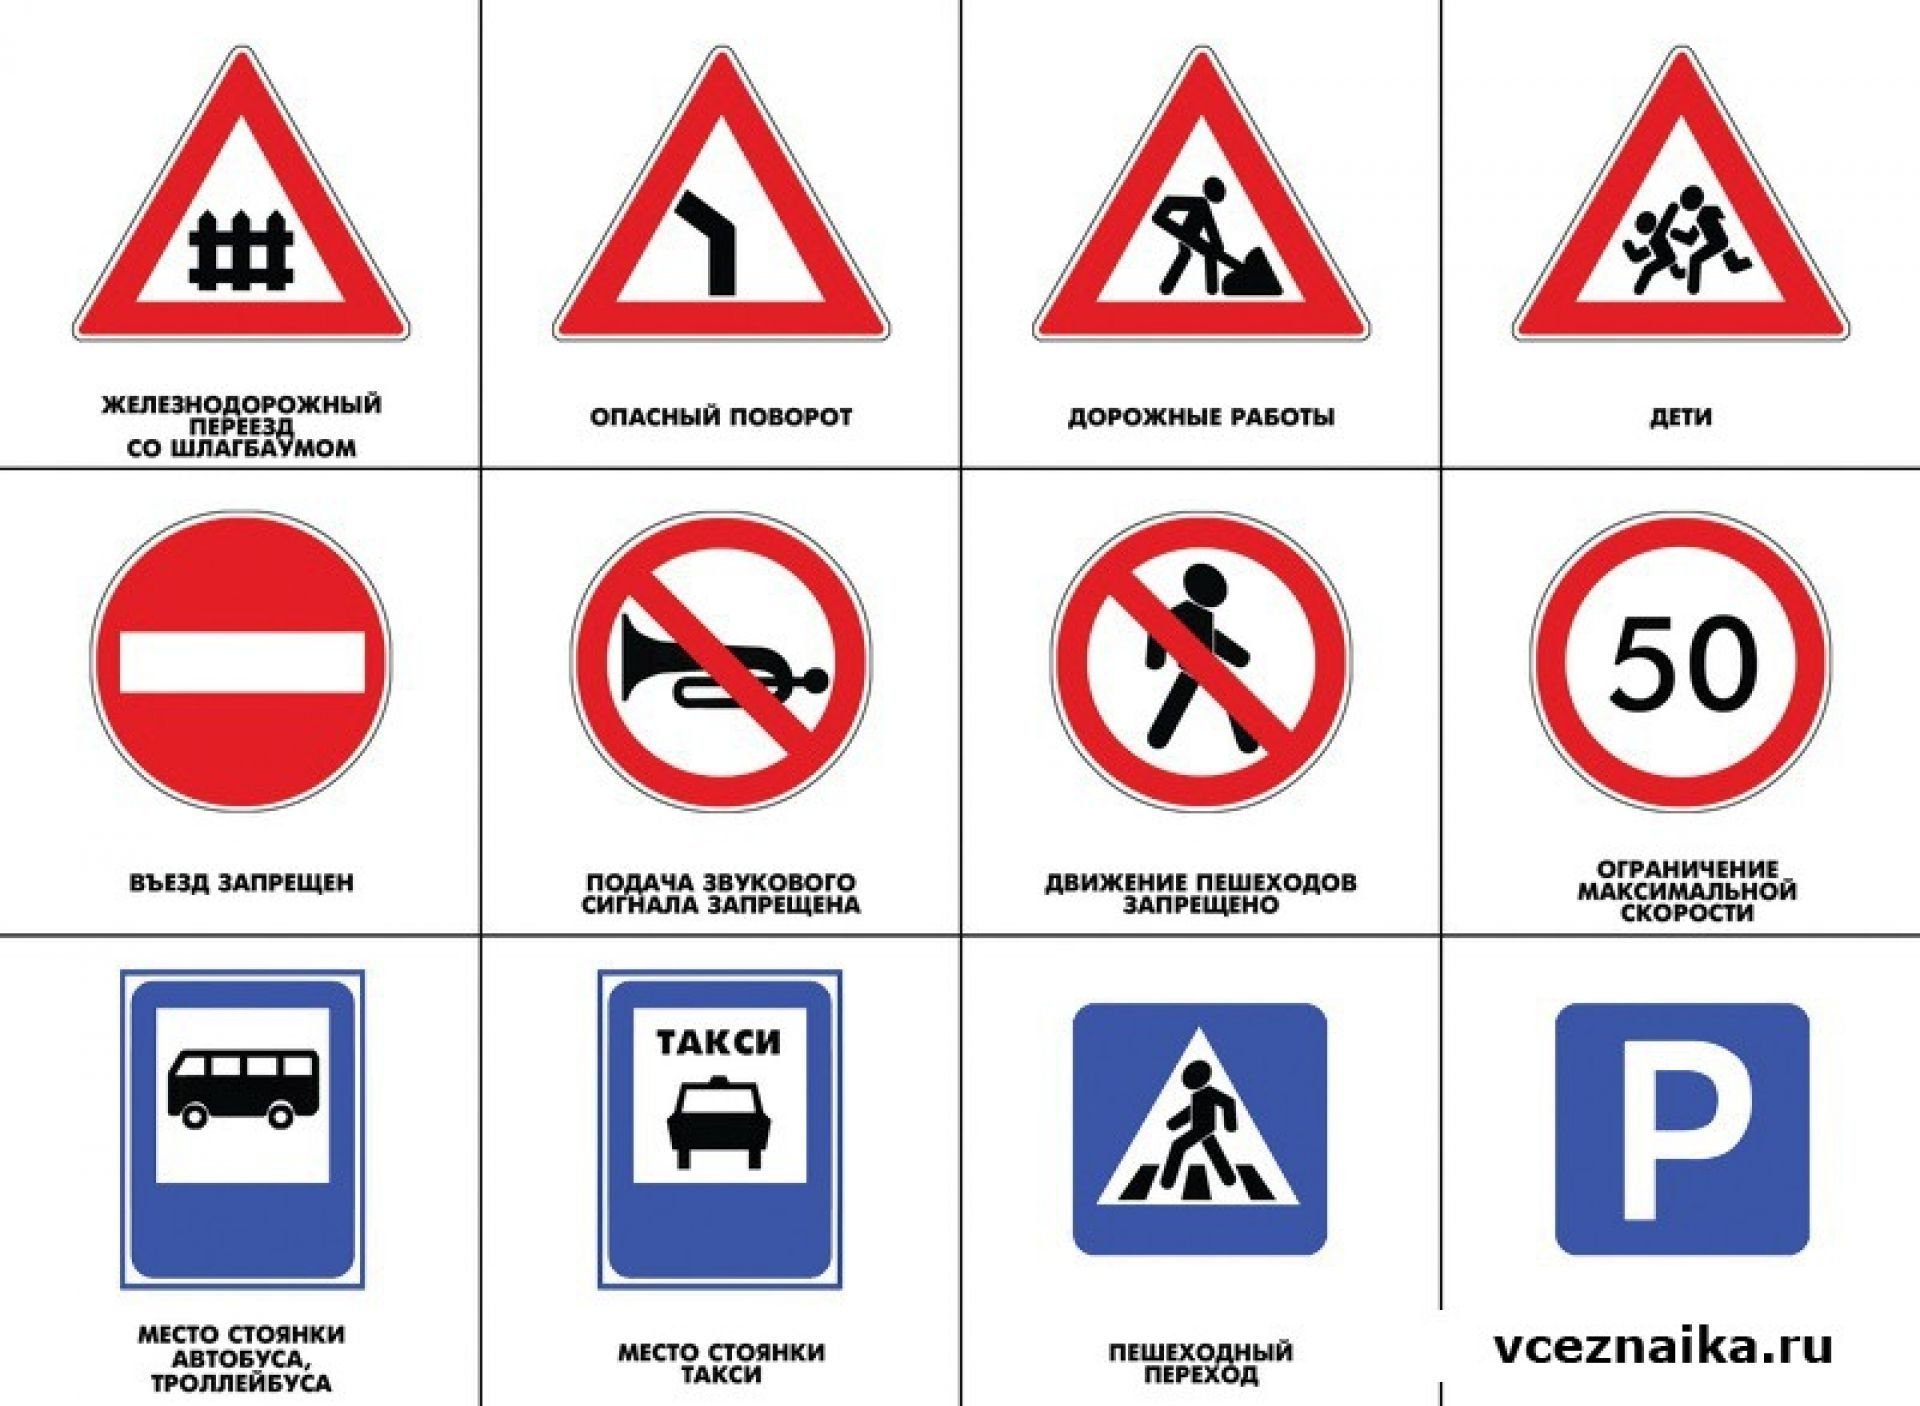 Какой знак можно встретить на автотрассе. БДД знаки для детей дошкольного возраста. «Дорожные знаки» длля детей. Знаки дорожного движения для детей в картинках. Экознаки дорожного движения.